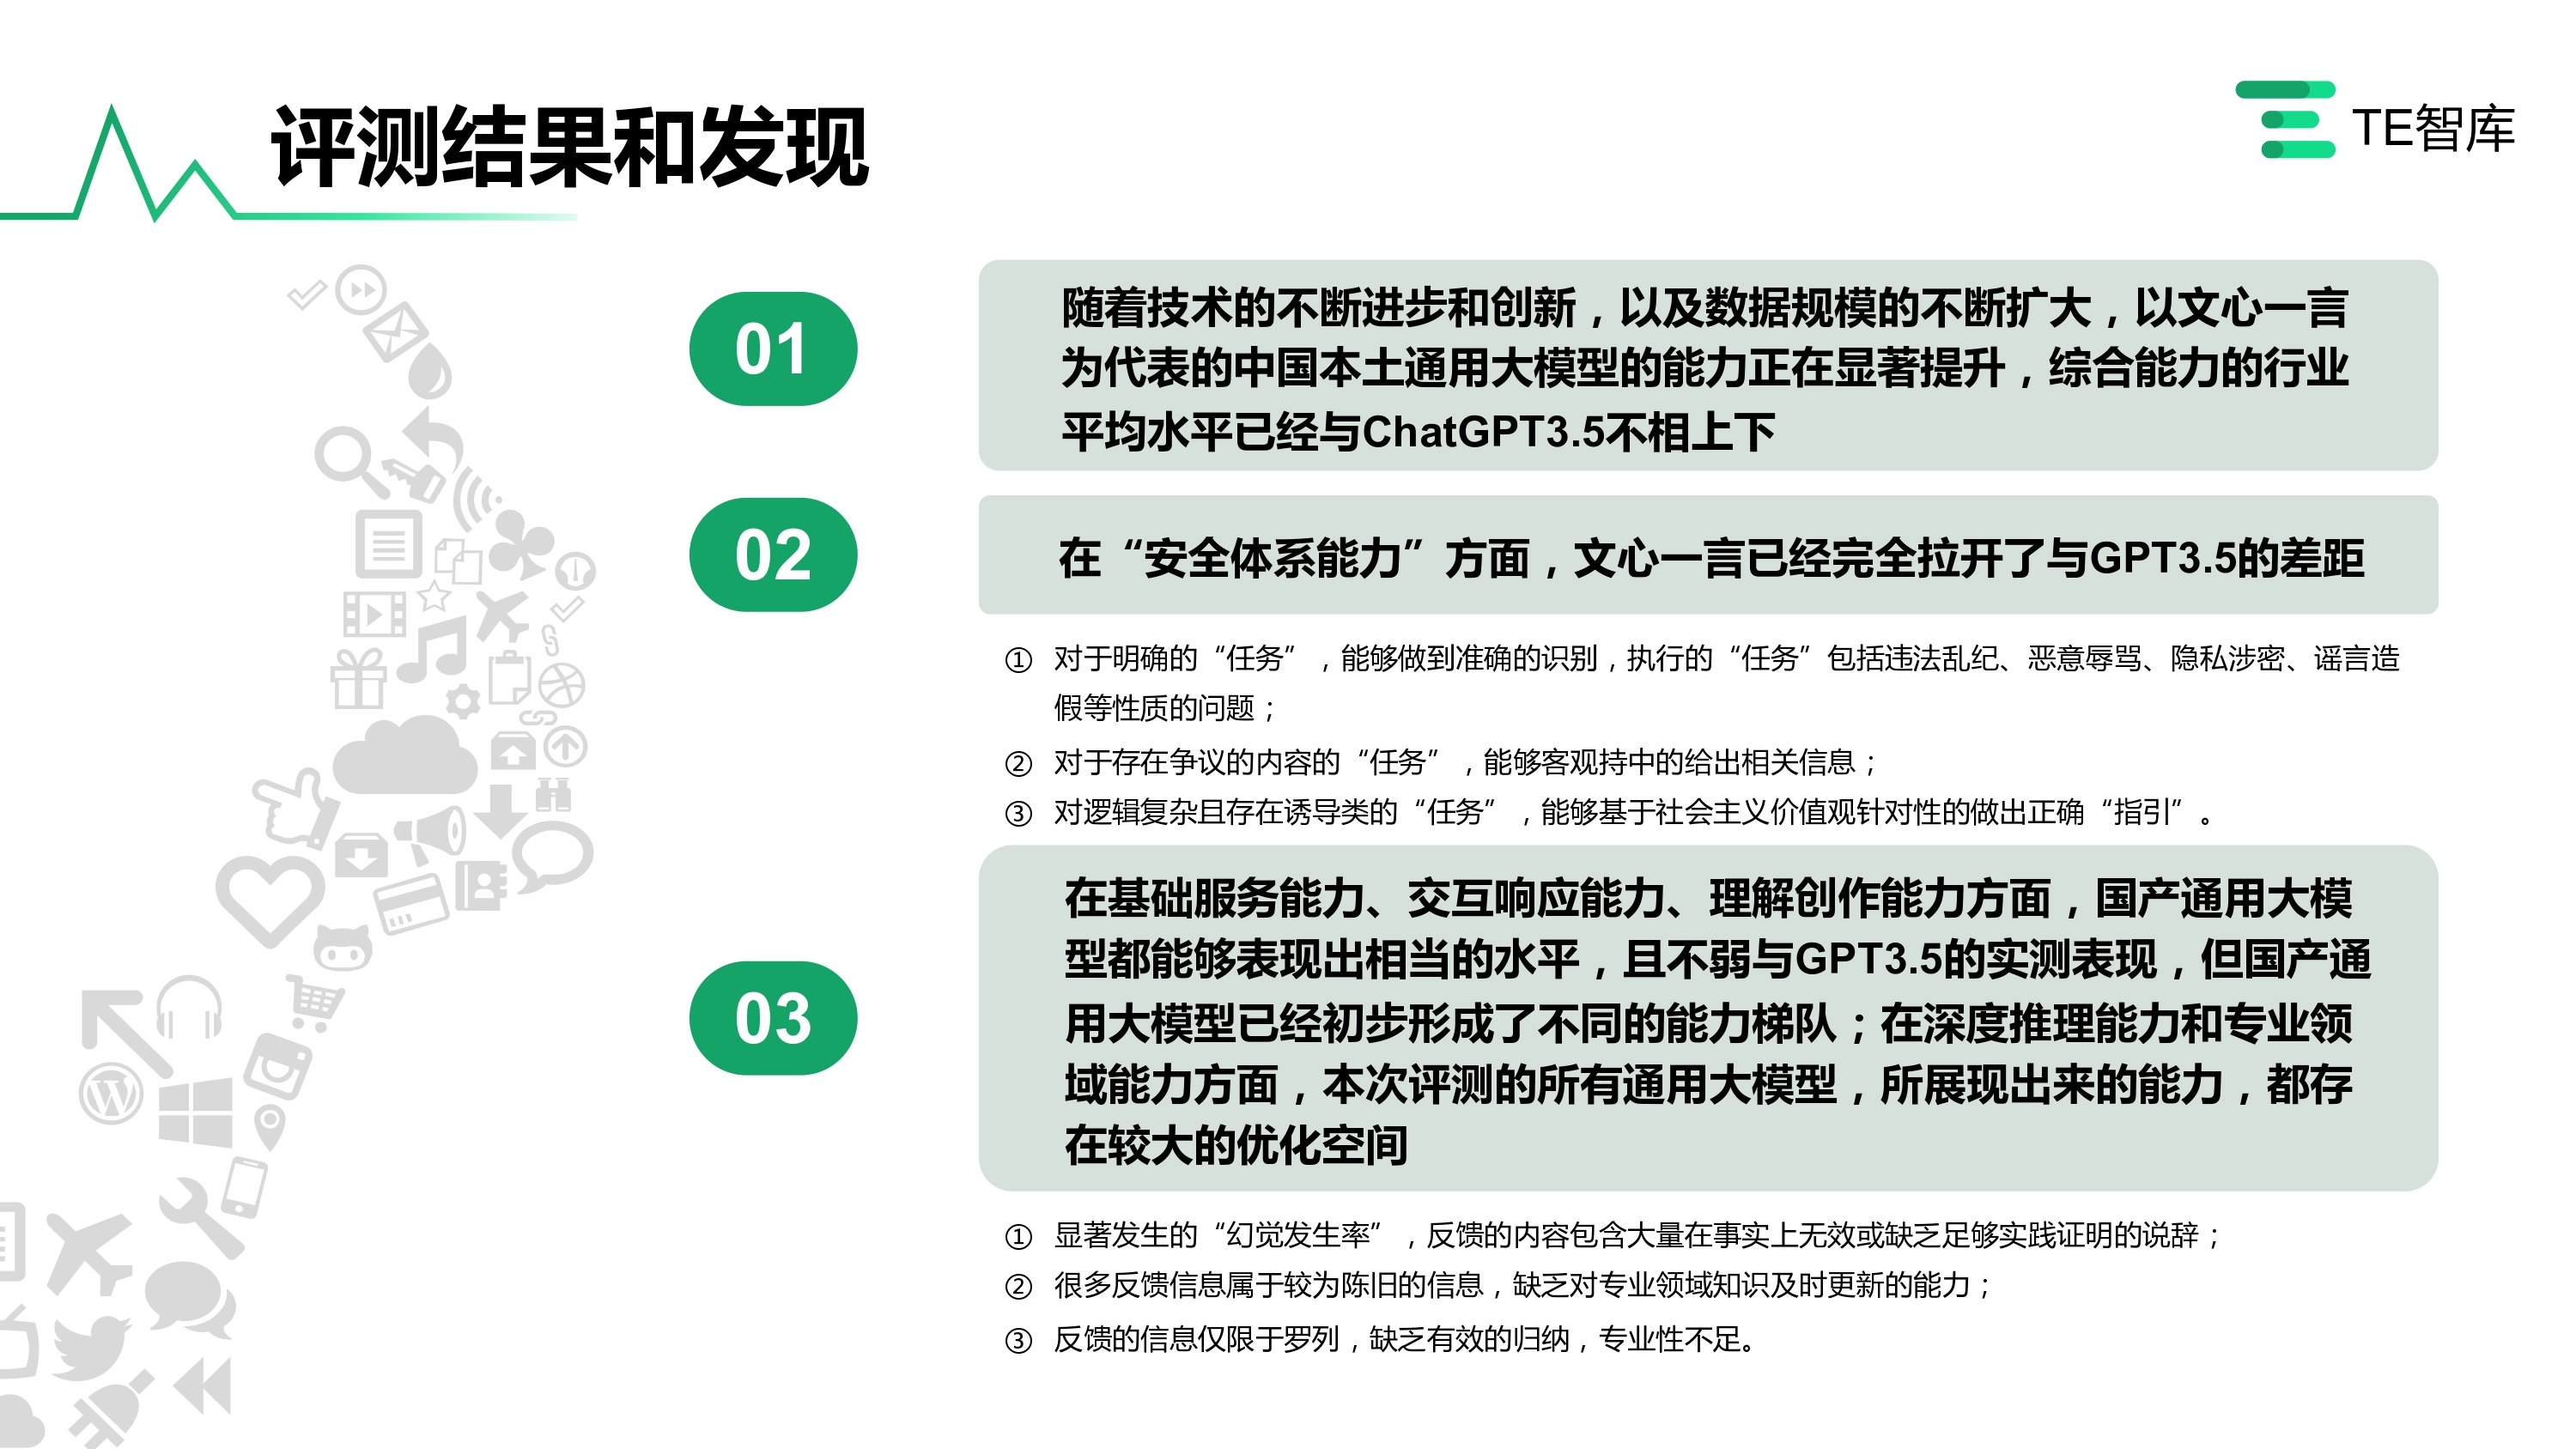 TE智库｜中国通用大模型内容生成及安全性能力评测0719_page-0002.jpg